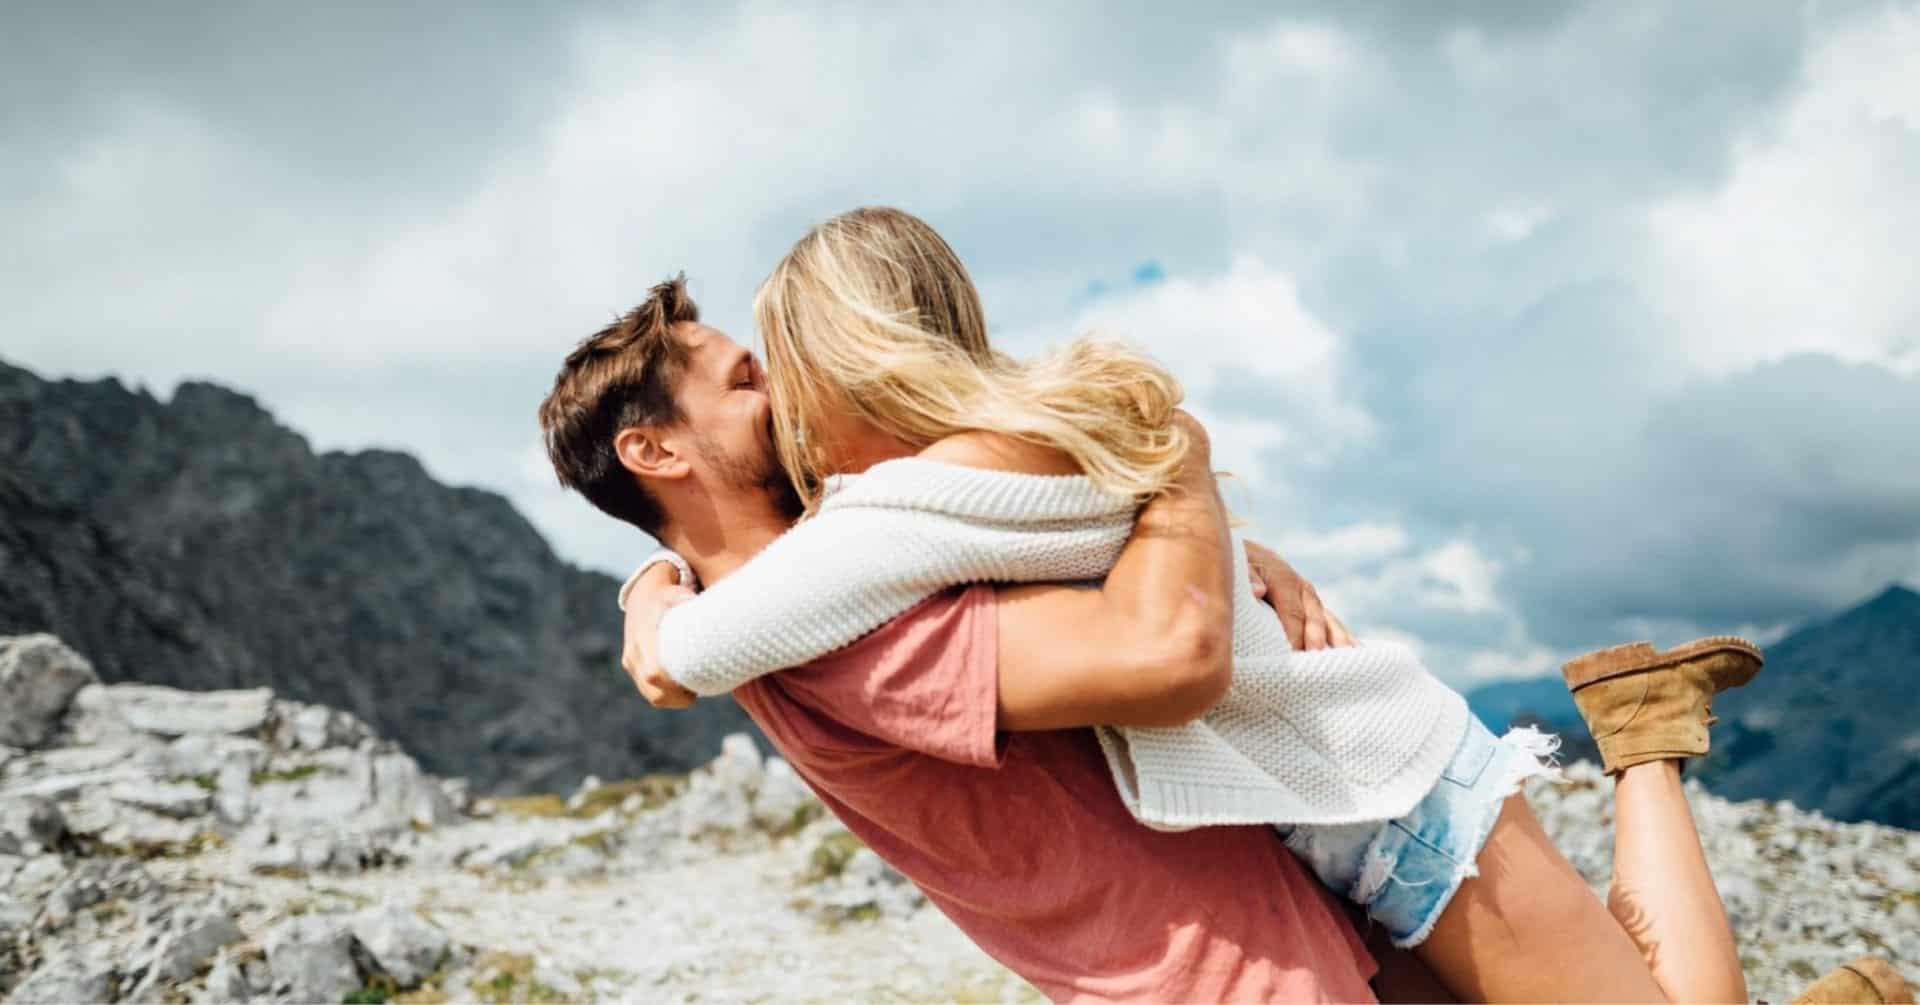 10 dicas para se ter um relacionamento saudável e feliz por mais tempo